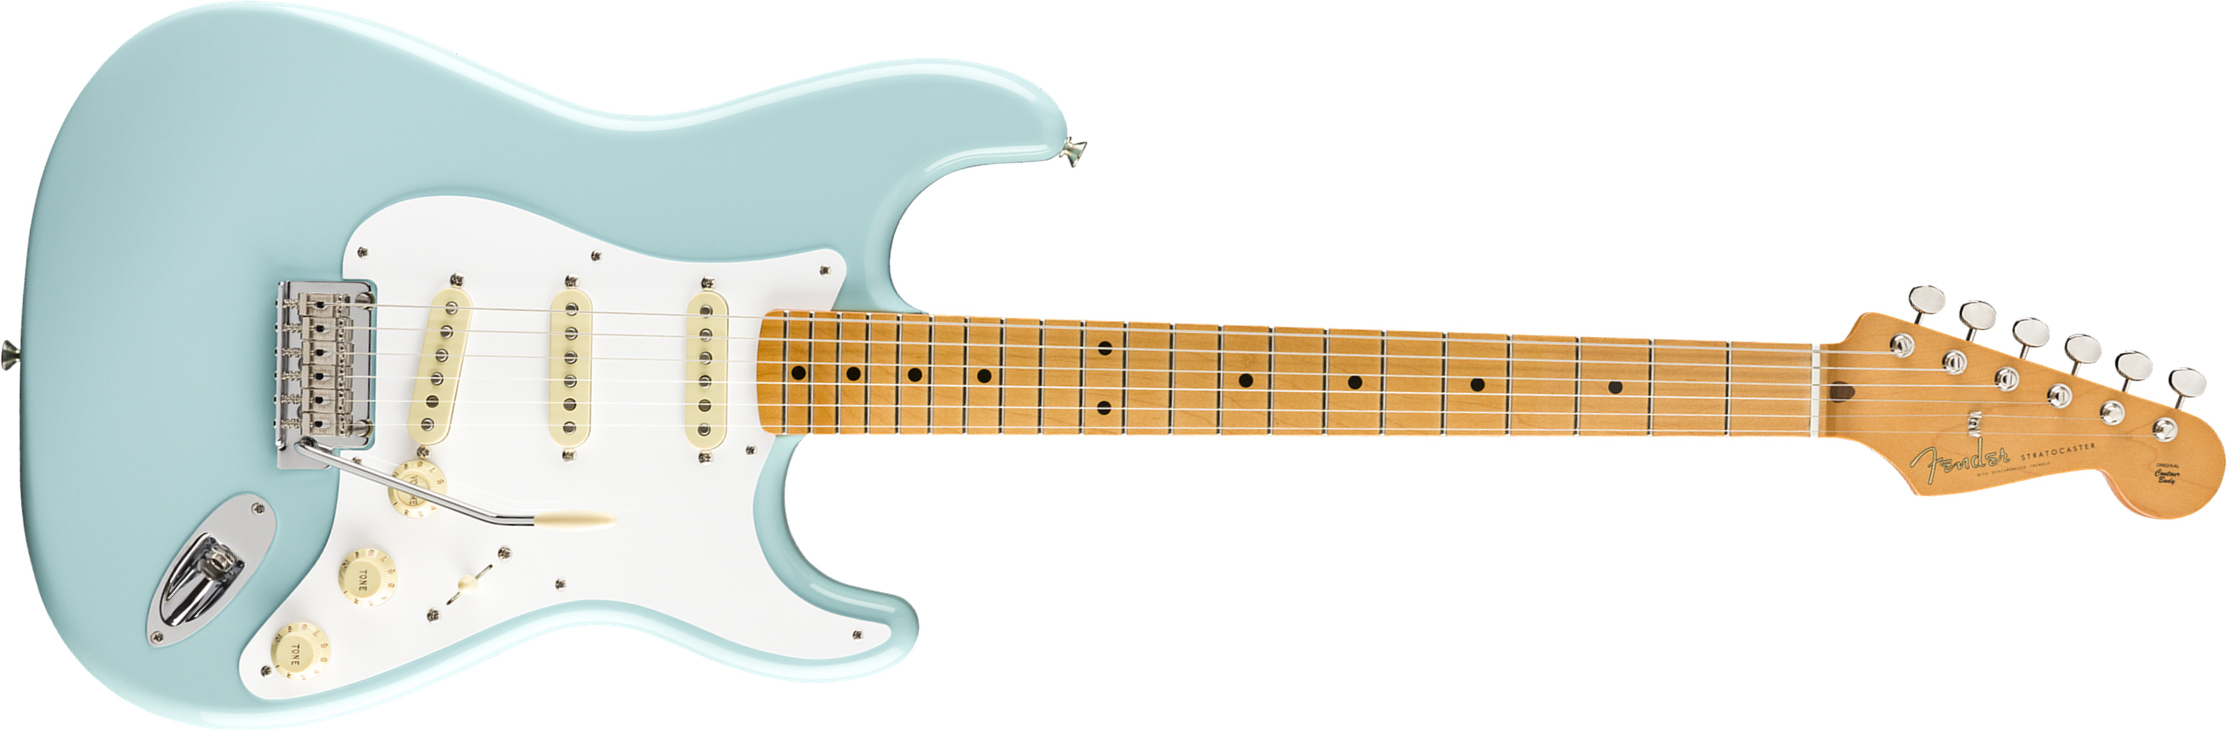 Fender Strat 50s Vintera Modified Mex Mn - Daphne Blue - E-Gitarre in Str-Form - Main picture